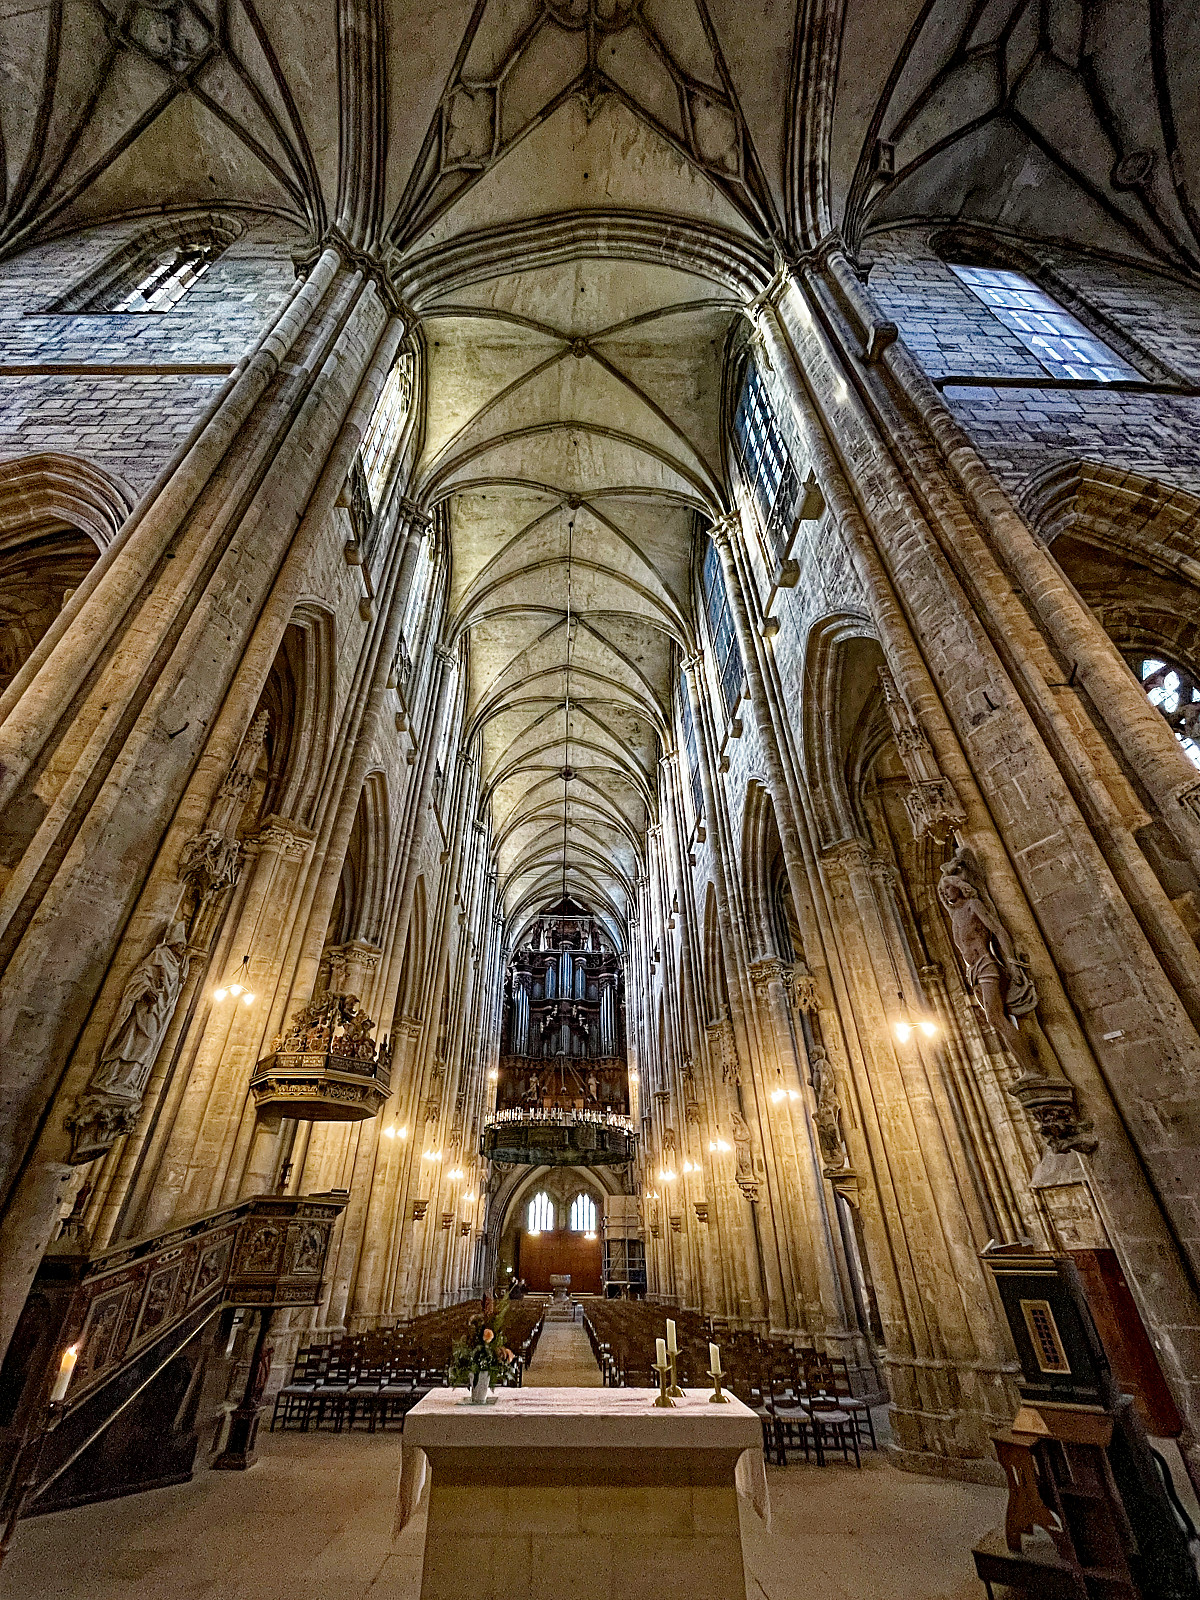 InnenAnsicht einer Kathedrale im gotischen Stil mit enorm hohen Säulen aus hellem Stein. Mit Weitwinkel schräg von unten aufgenommen. Im VorderGrund ein schlichter Altar. Am hinteren Ende eine mächtige Orgel.